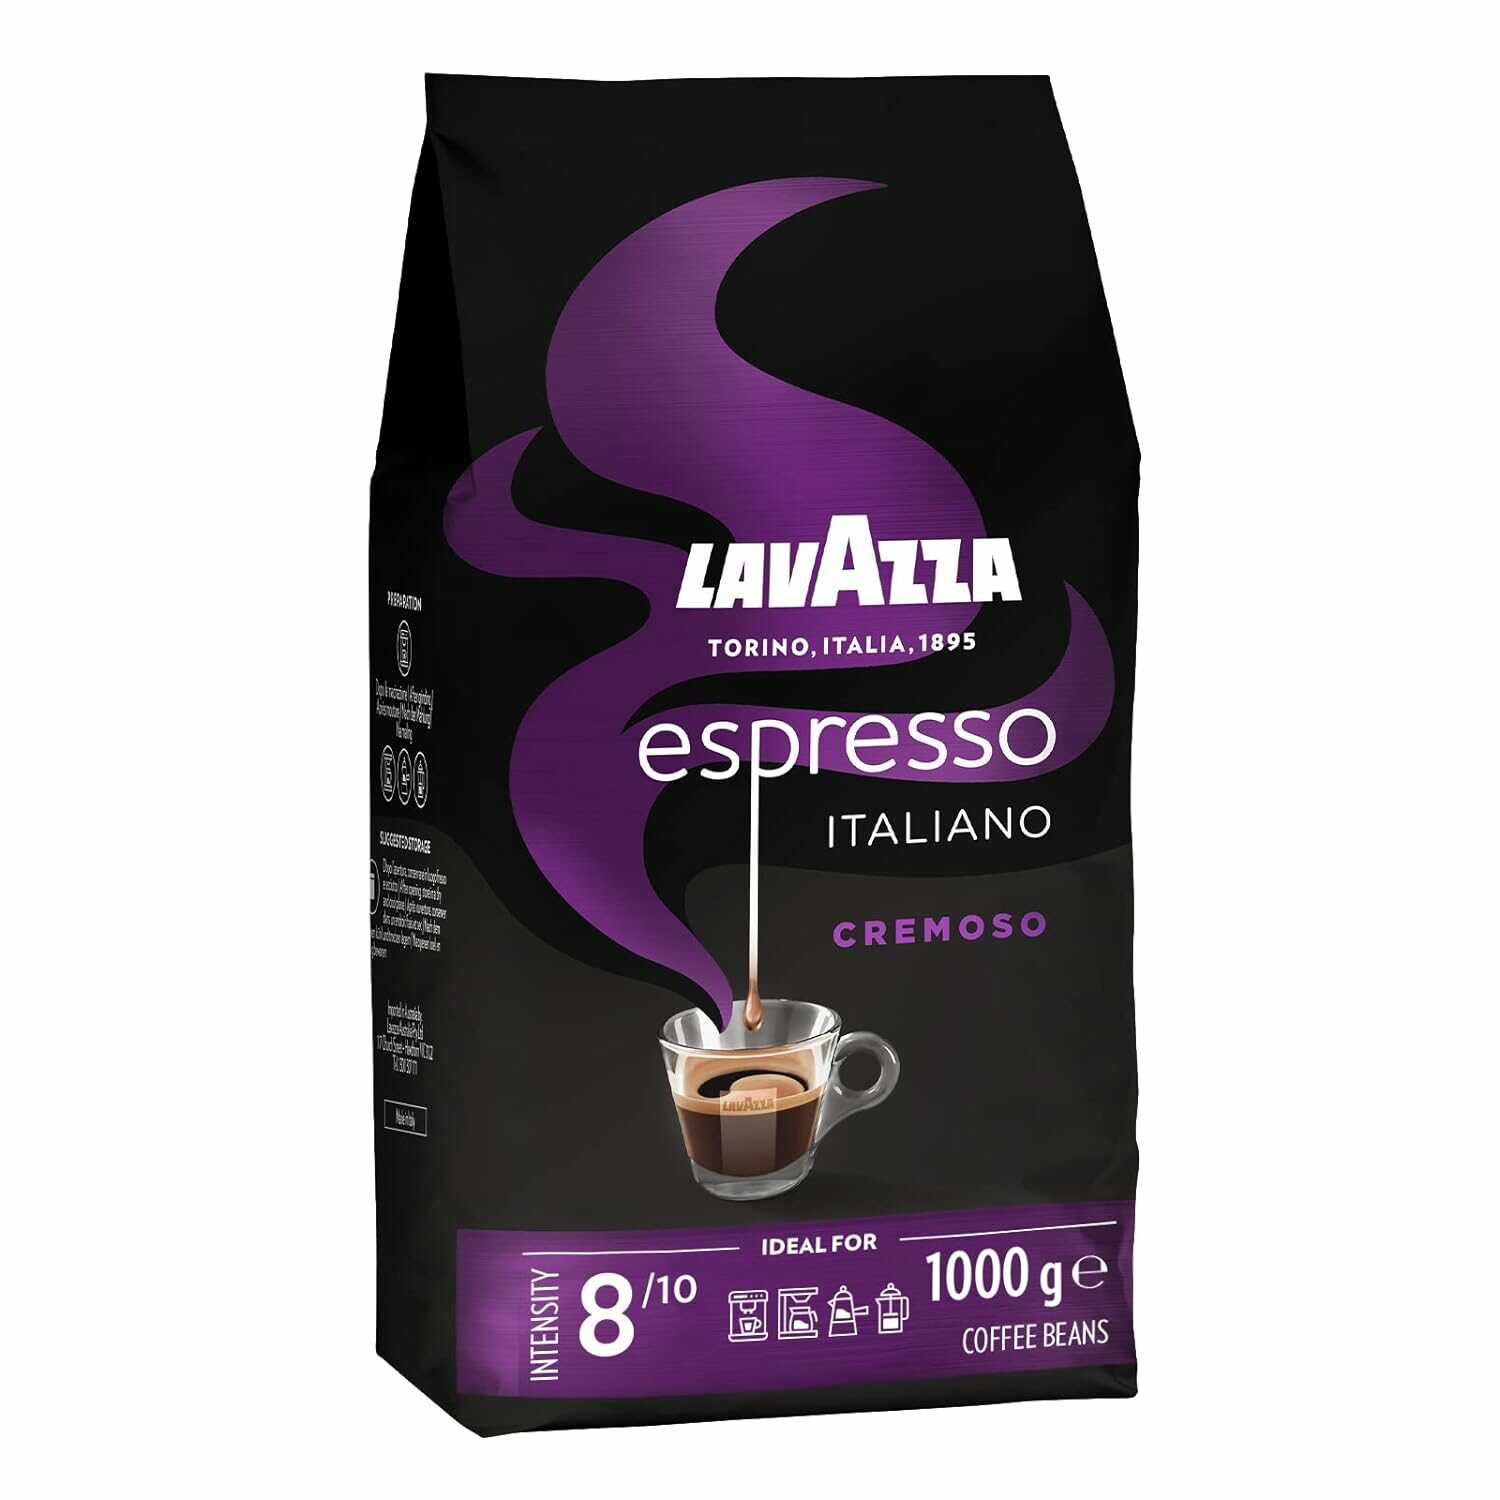 Lavazza, Espresso Italiano Cremoso 1KG für 8,99€ statt 15,98€